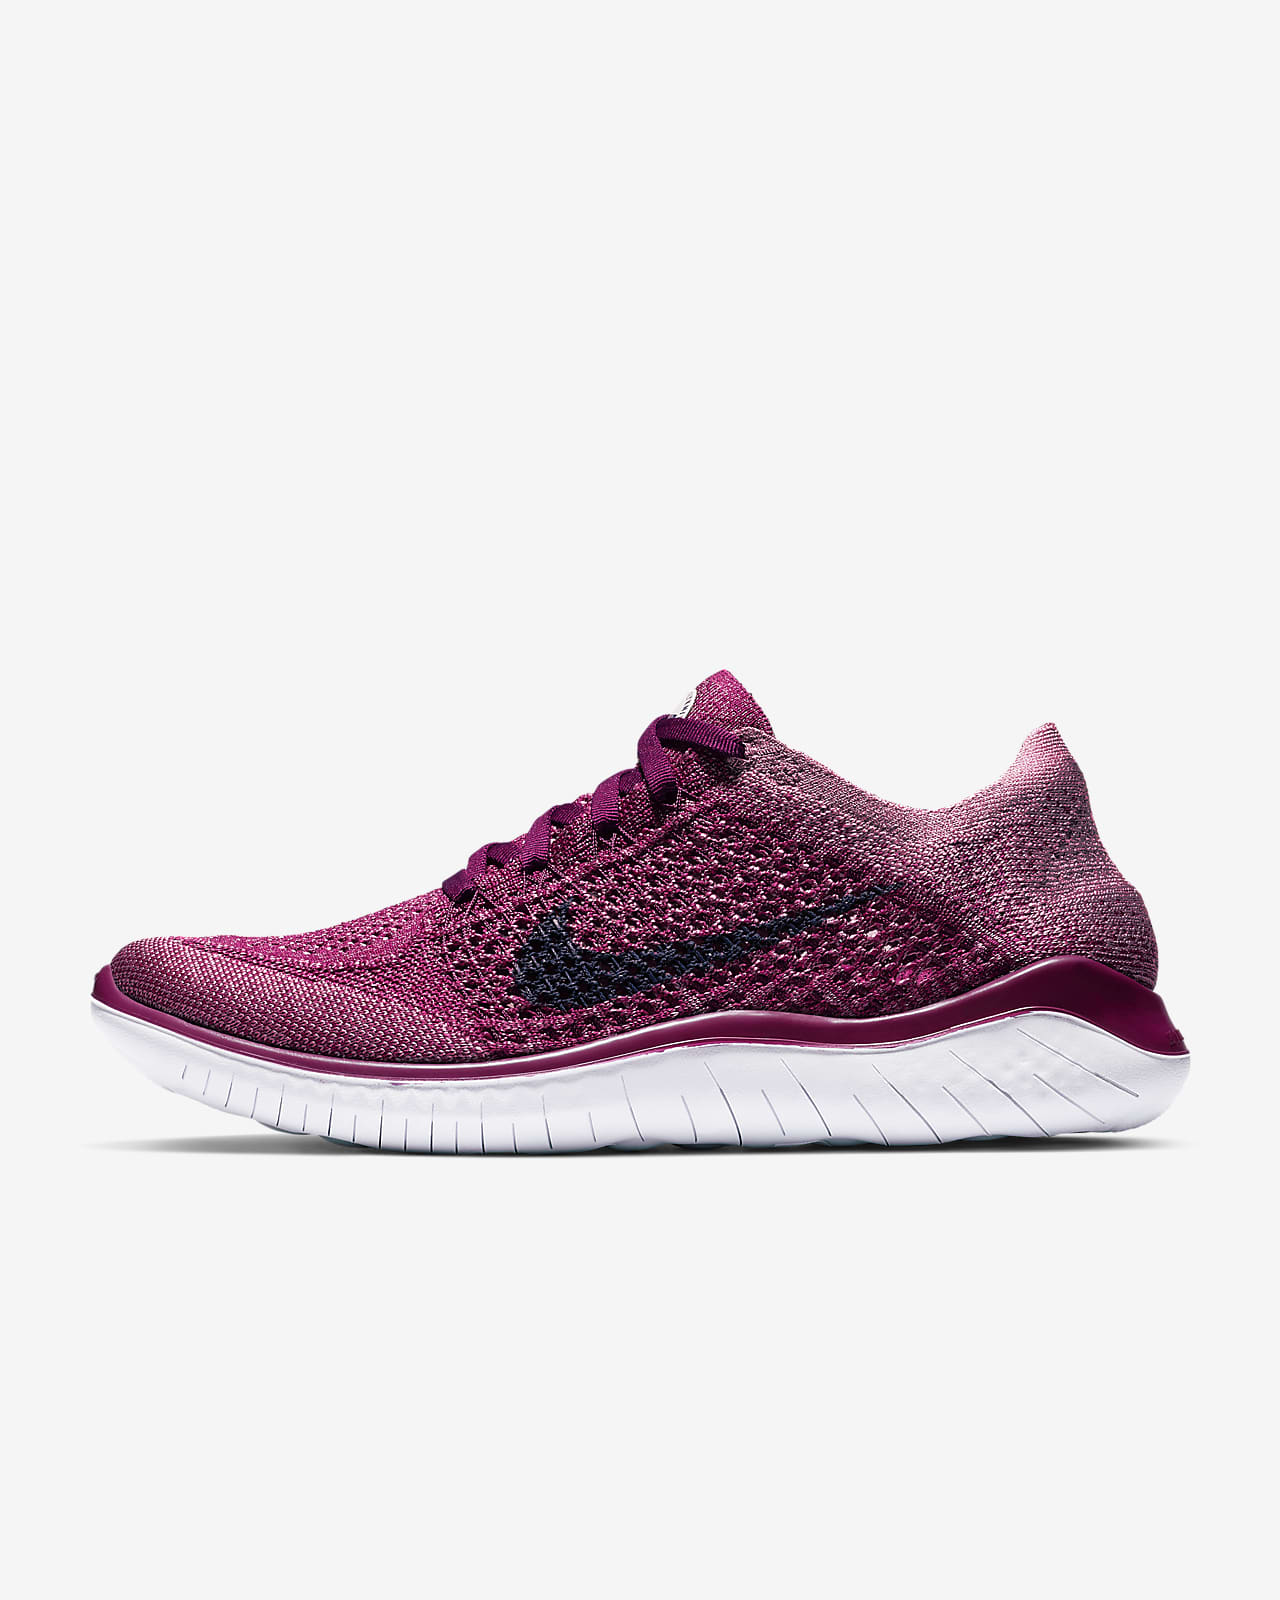 Nike Free Run 2018 Women's Running Shoes